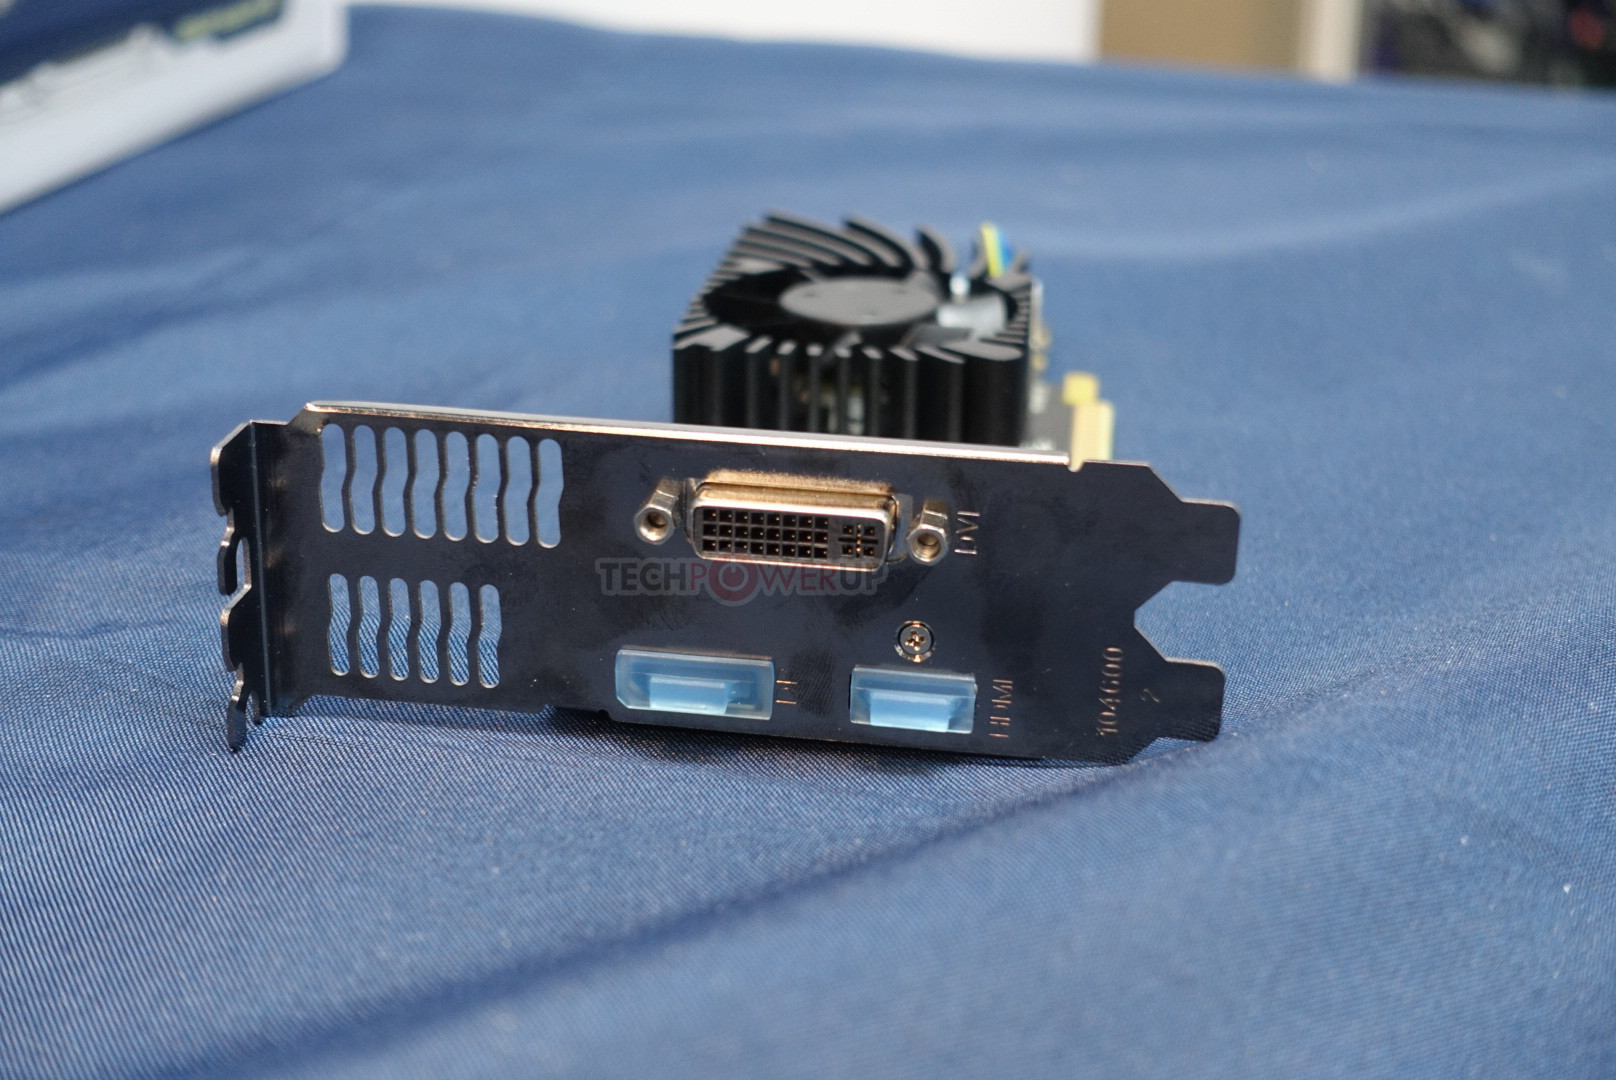 Immagine pubblicata in relazione al seguente contenuto: Sapphire presenta una video card Radeon RX 550 con connettore di uscita DVI-I | Nome immagine: news26428_Sapphire-Radeon-RX-550-DVI-I_2.jpg